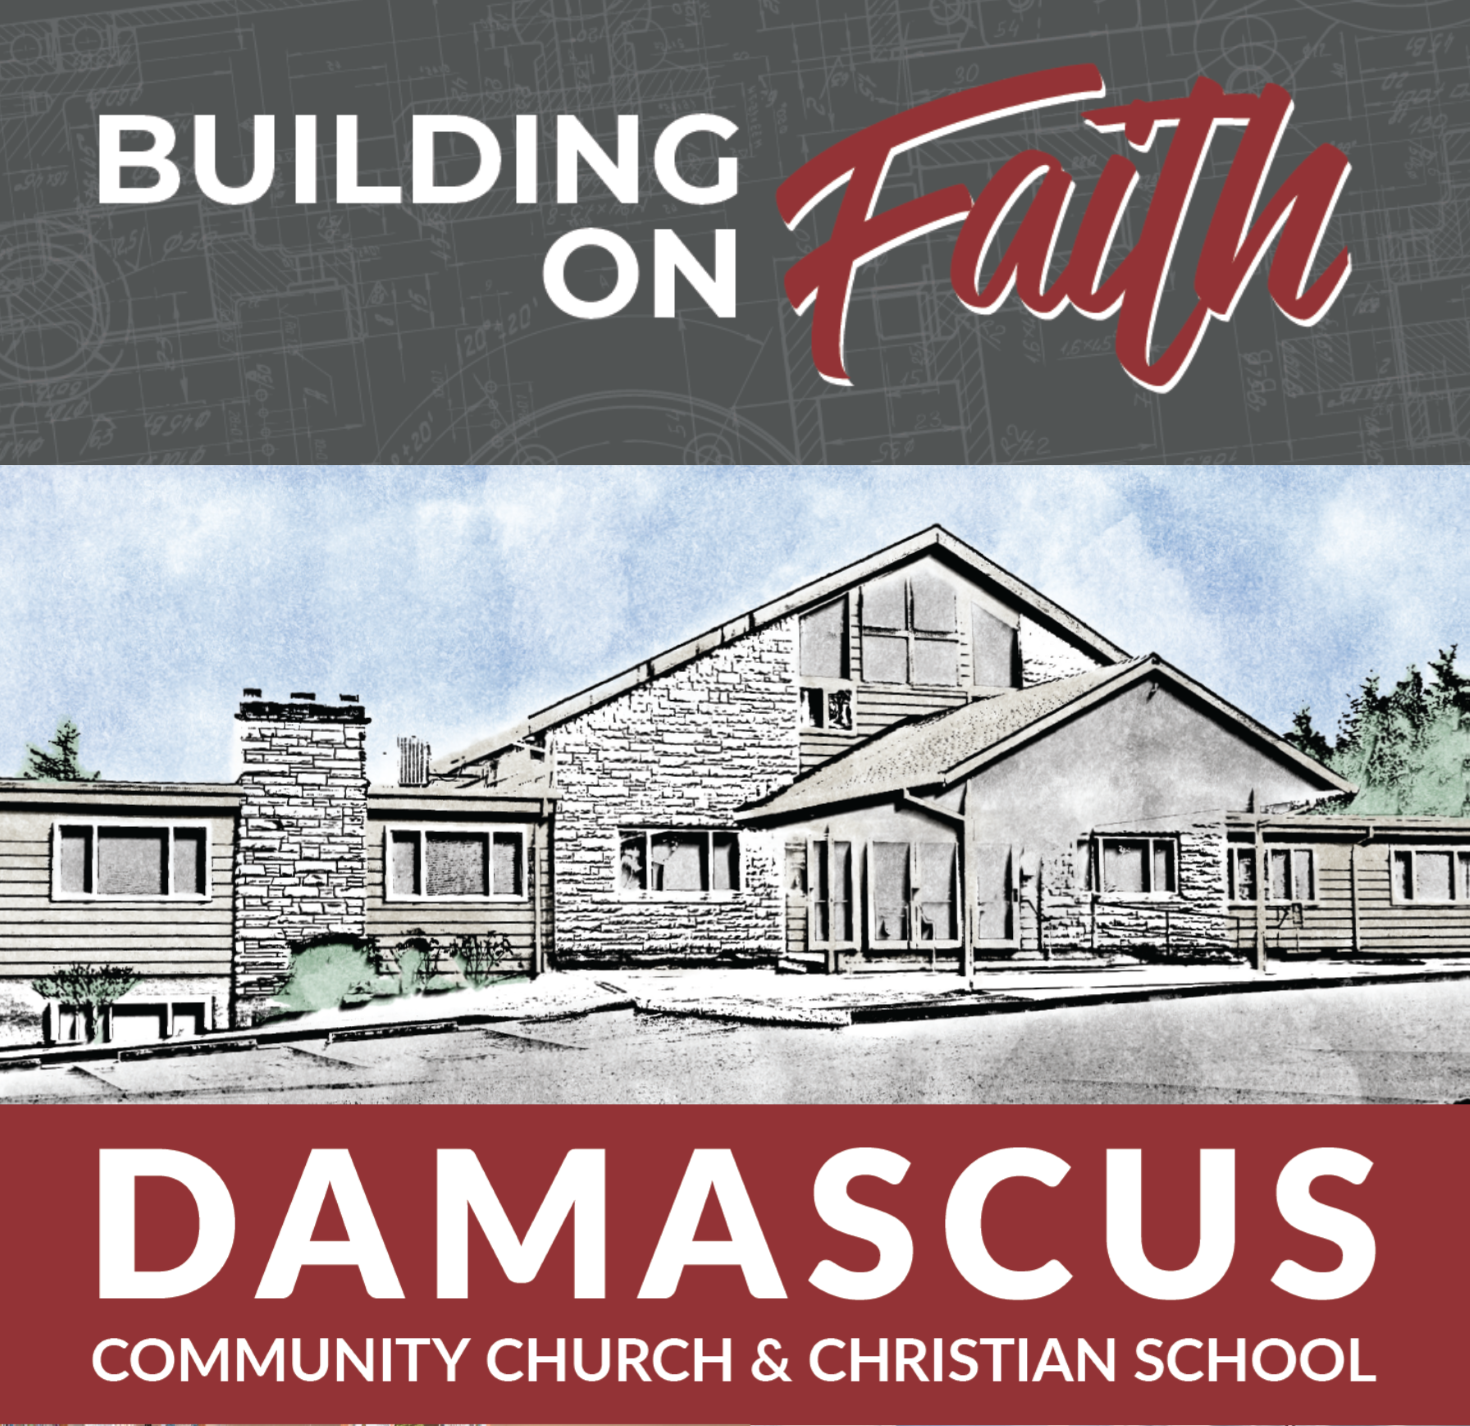 Building on faith